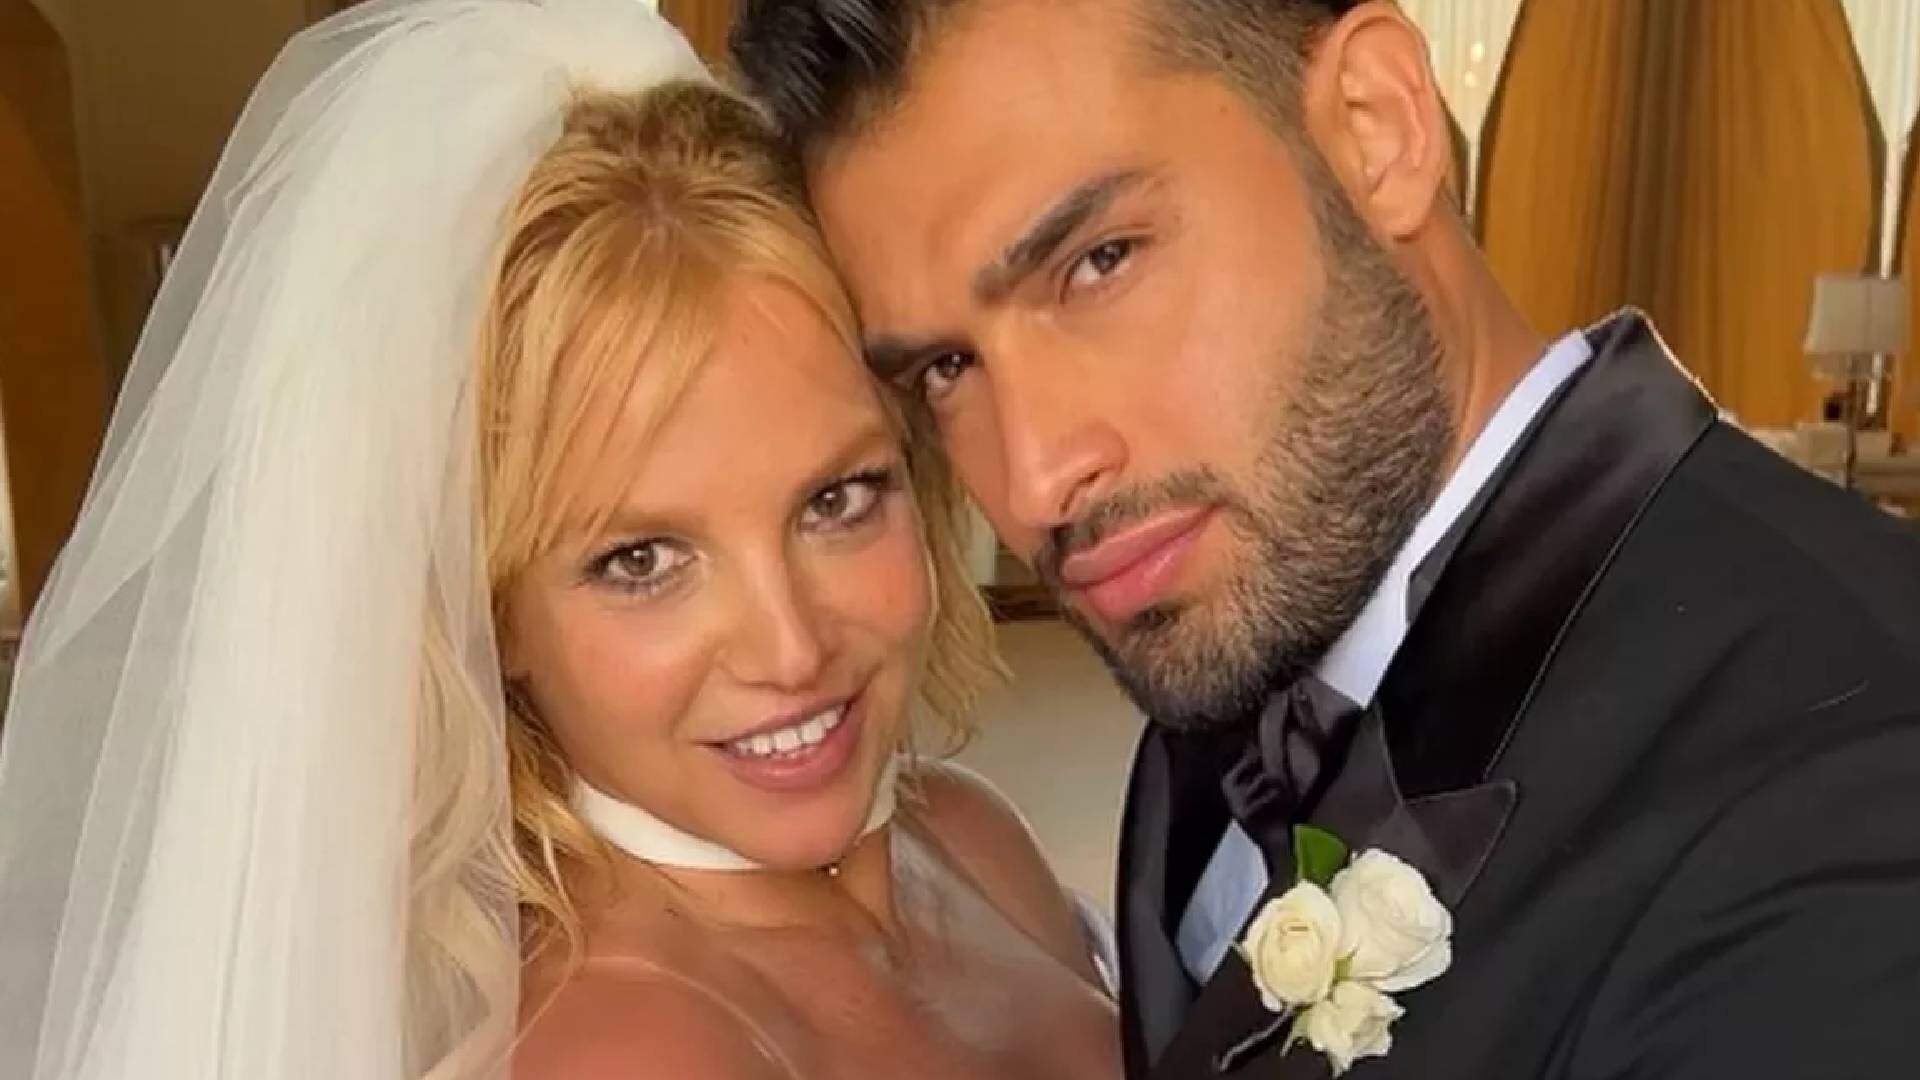 “Casamento de conto de fadas”: confira fotos e detalhes da cerimônia de Britney Spears e Sam Asghari